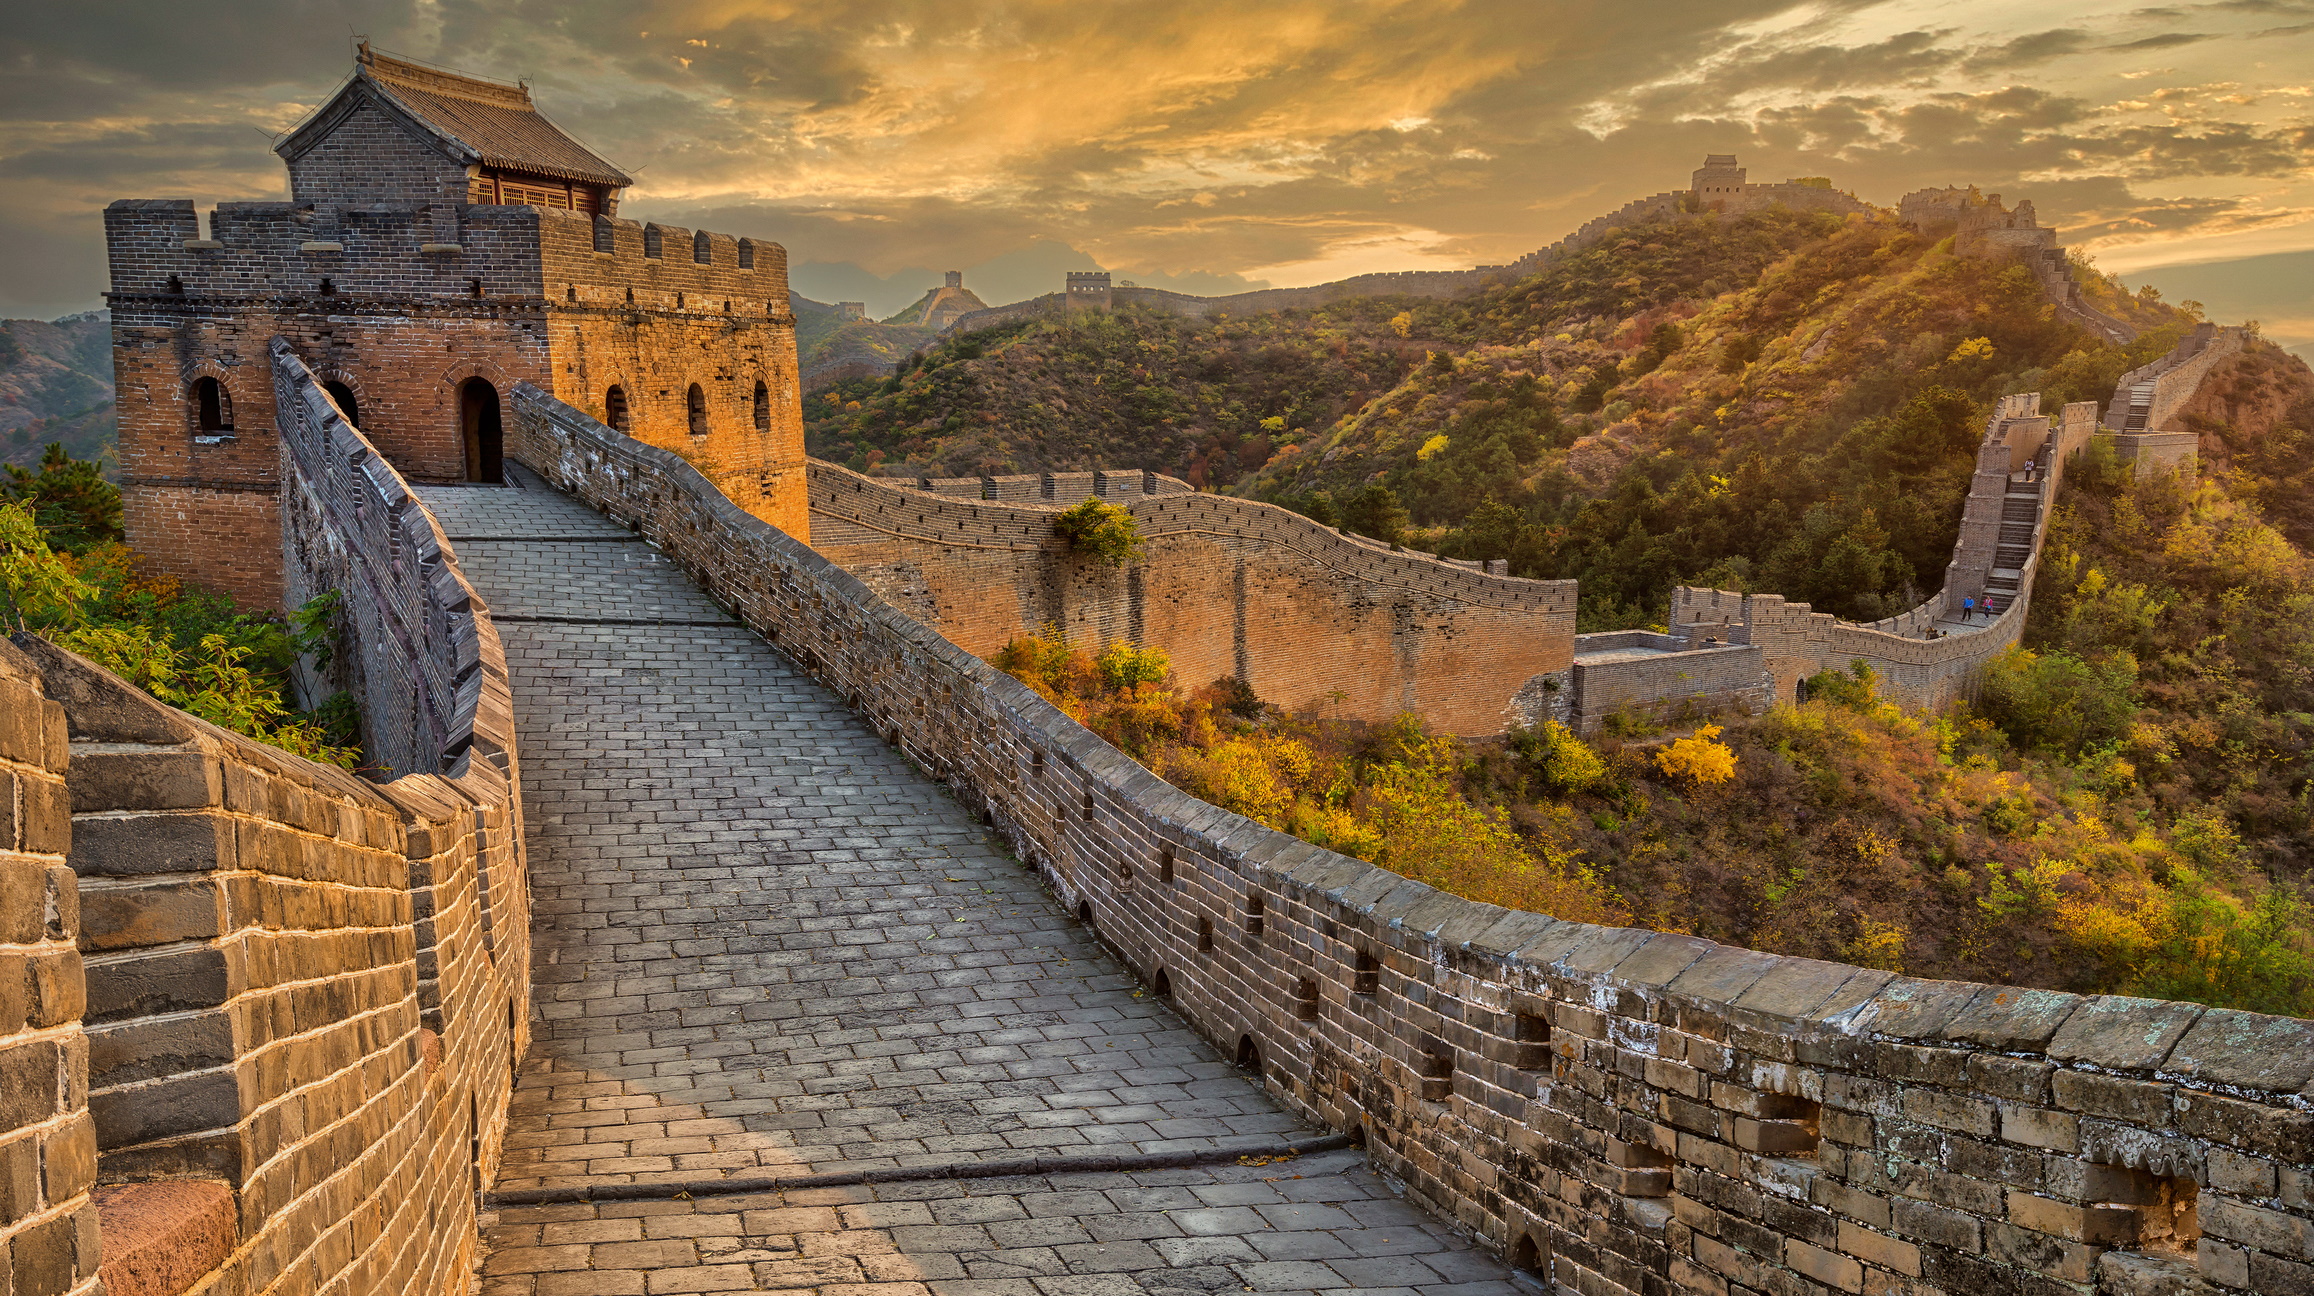 <p><strong>Великата китайска стена</strong></p>

<p>Прекомерното посещение, естественото износване и разрушение и продажбата на тухли с исторически гравюри вече са повредили една трета от емблематичната стена.</p>